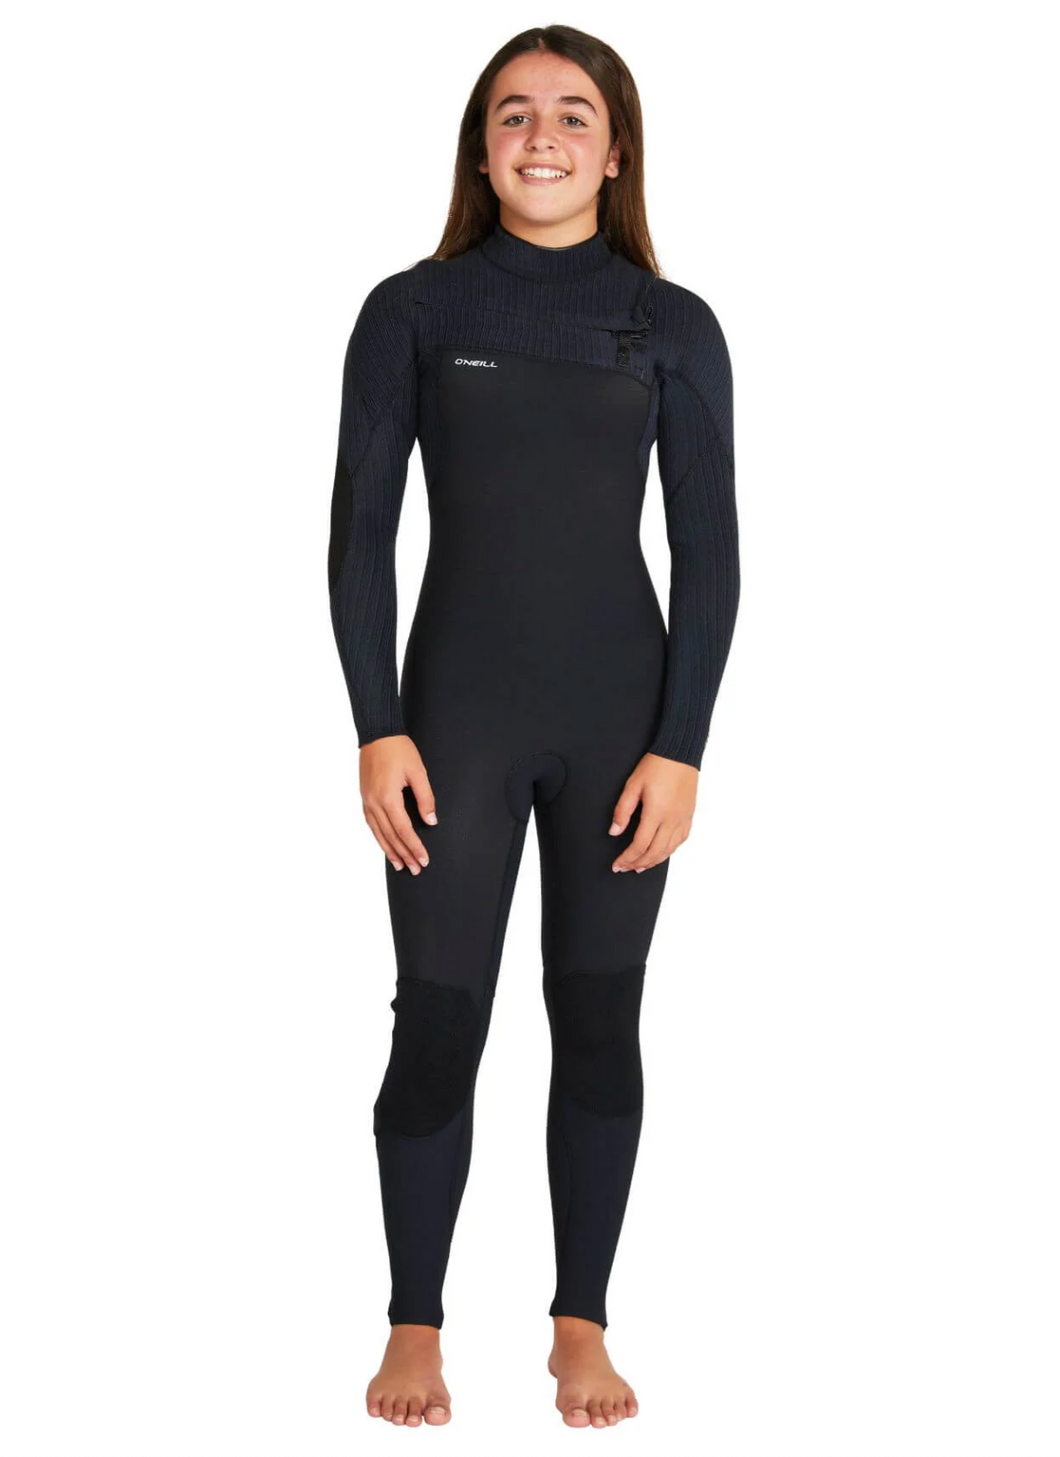 O'NEILL - Girl's Hyperfreak 3/2+ Steamer Chest Zip Wetsuit - Black